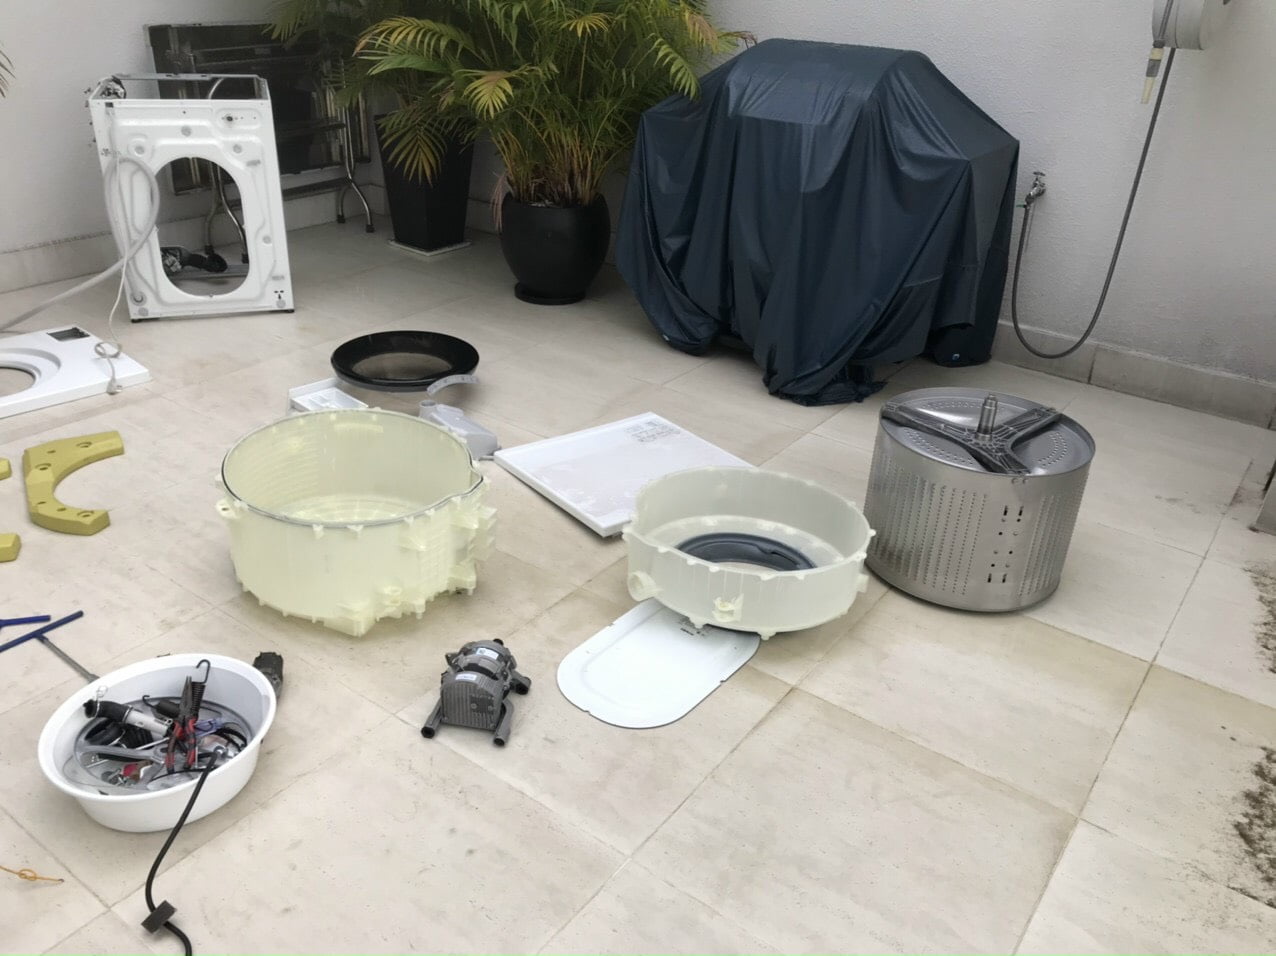 g3 - Hướng dẫn vệ sinh máy giặt tại nhà đơn giản, sạch bẩn hiệu quả